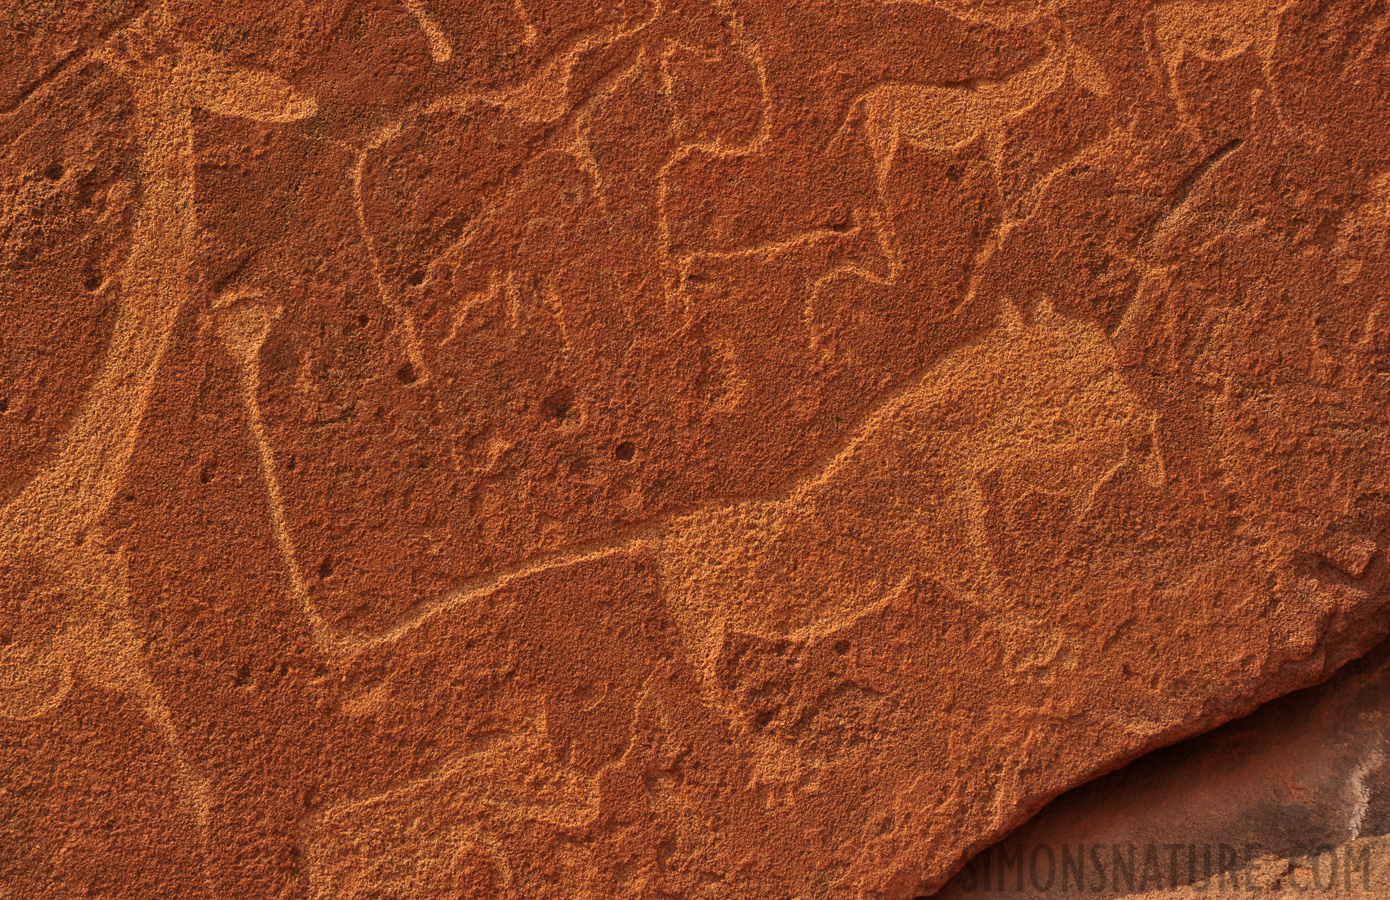 San People Rock Engravings [160 mm, 1/250 sec at f / 11, ISO 400]